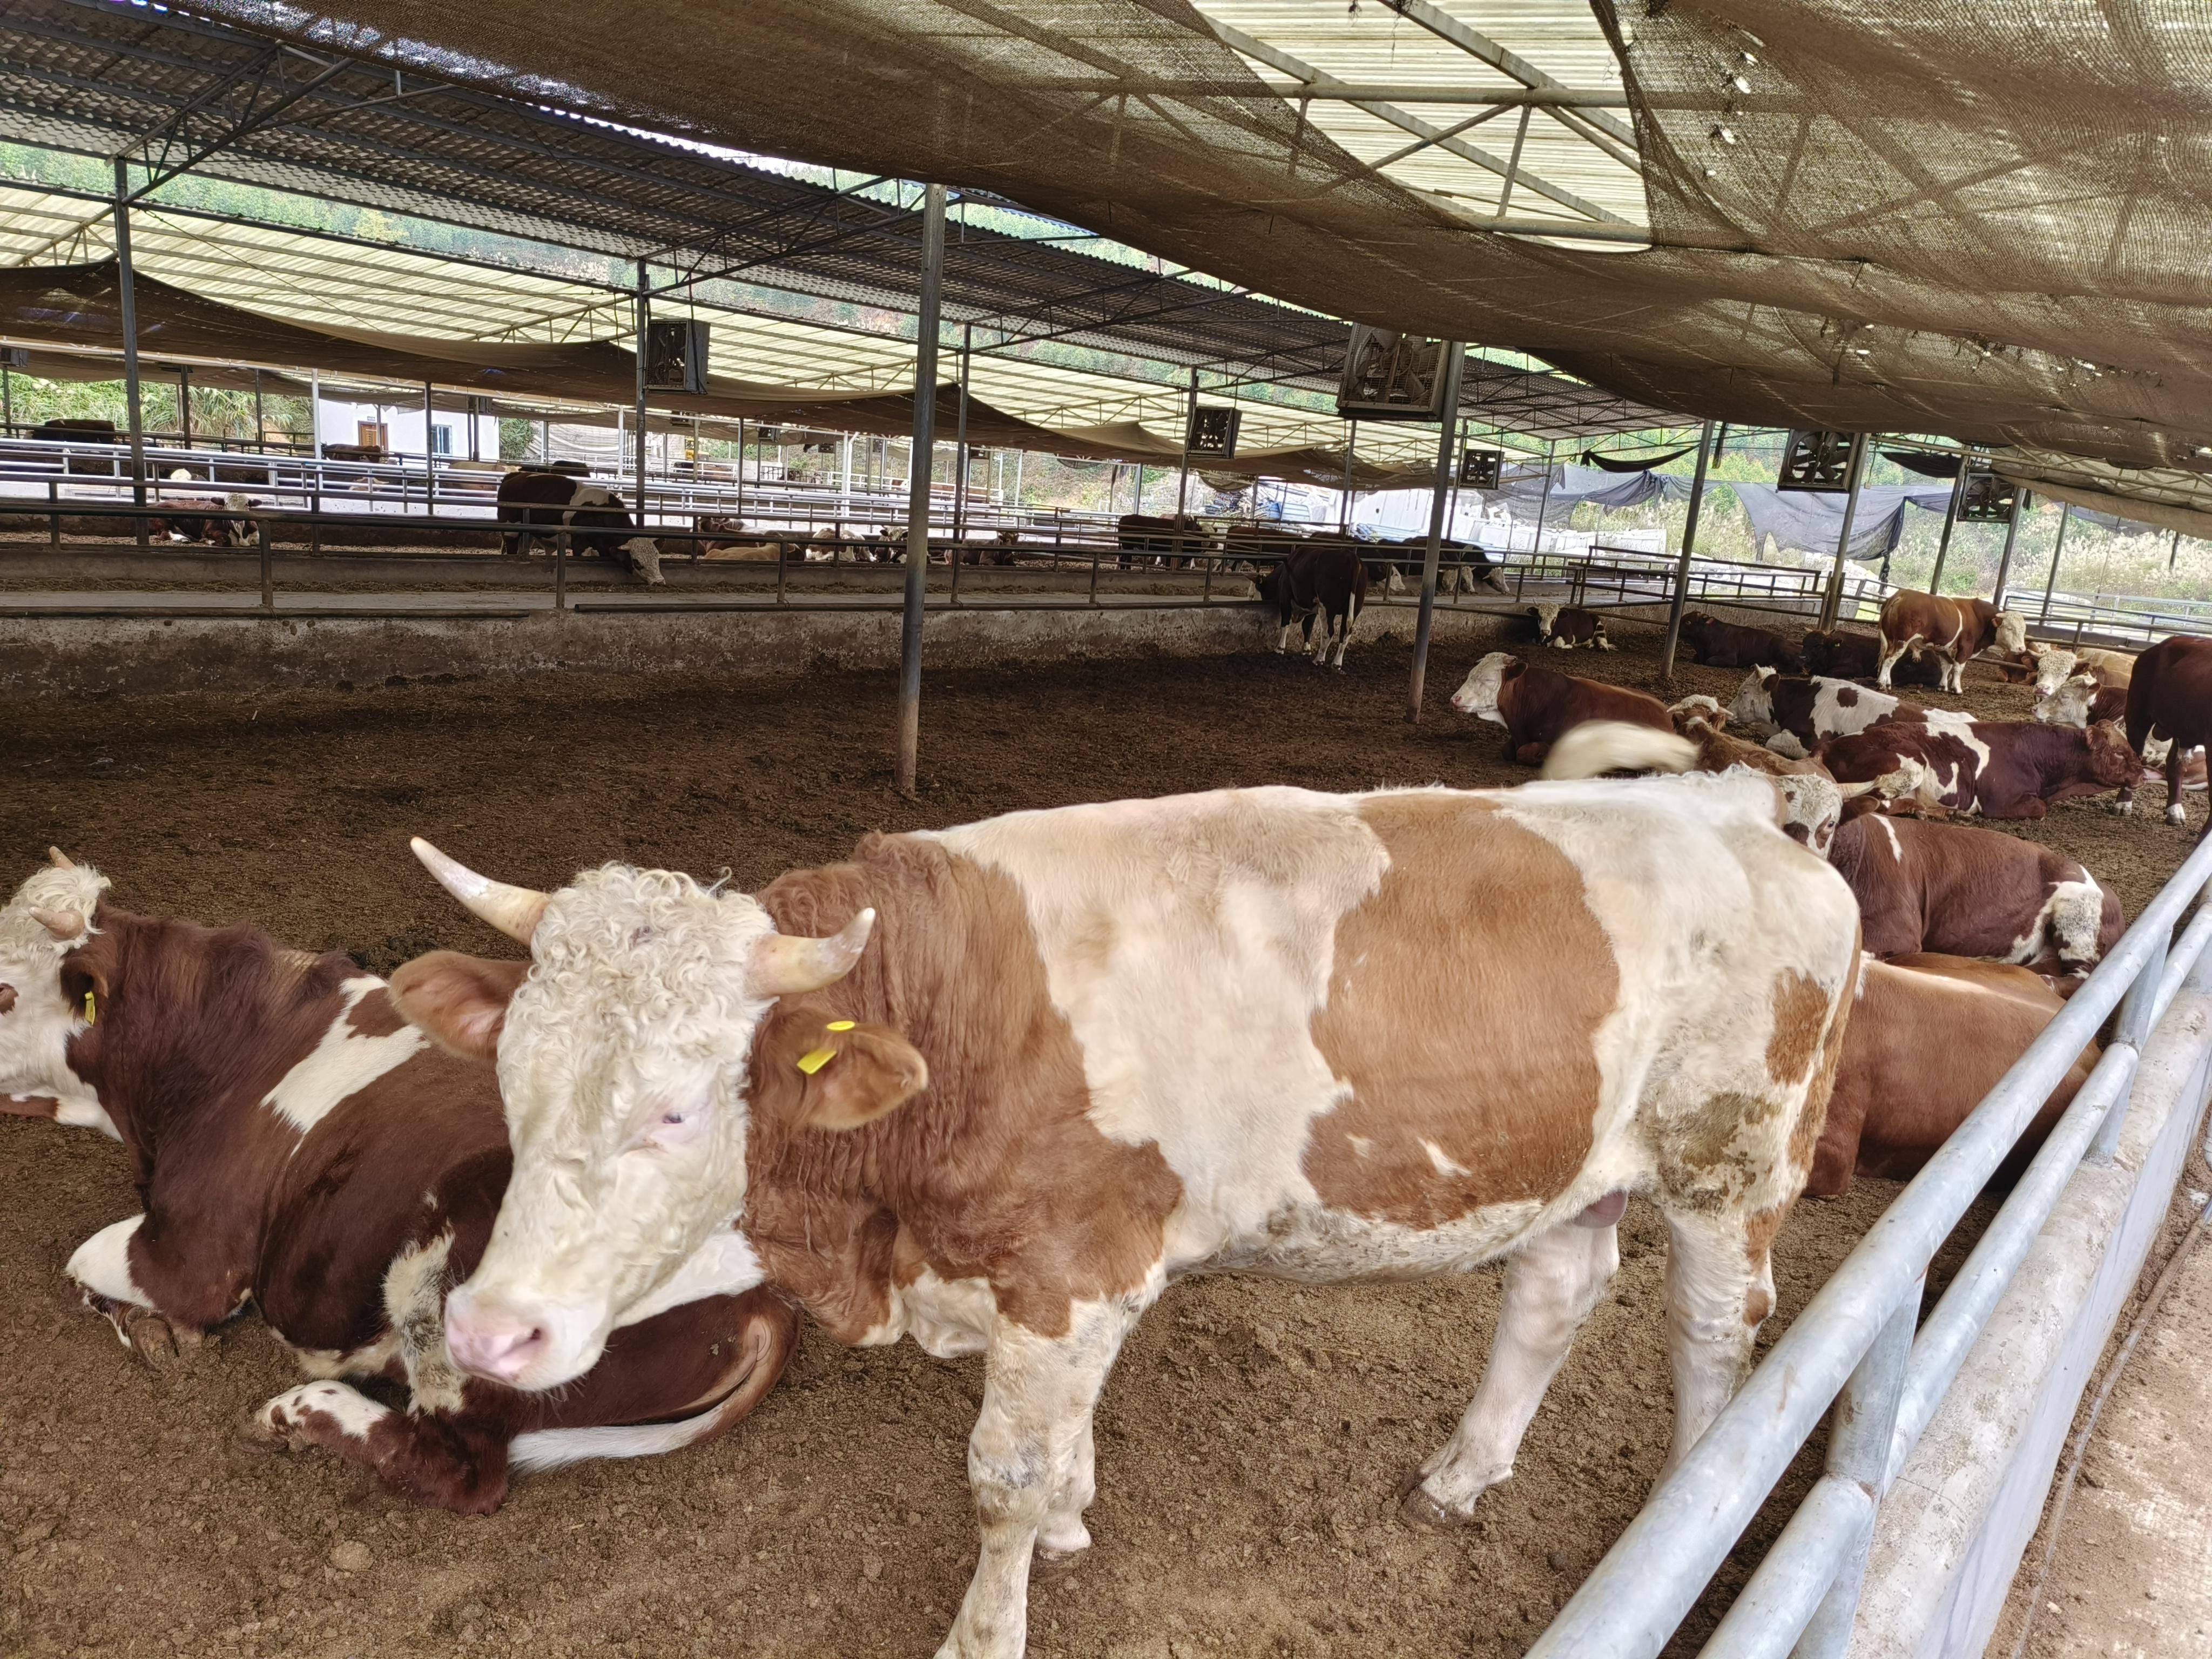 生物发酵床养殖技术让养牛废弃物转化为有机肥料,让你养牛更轻松